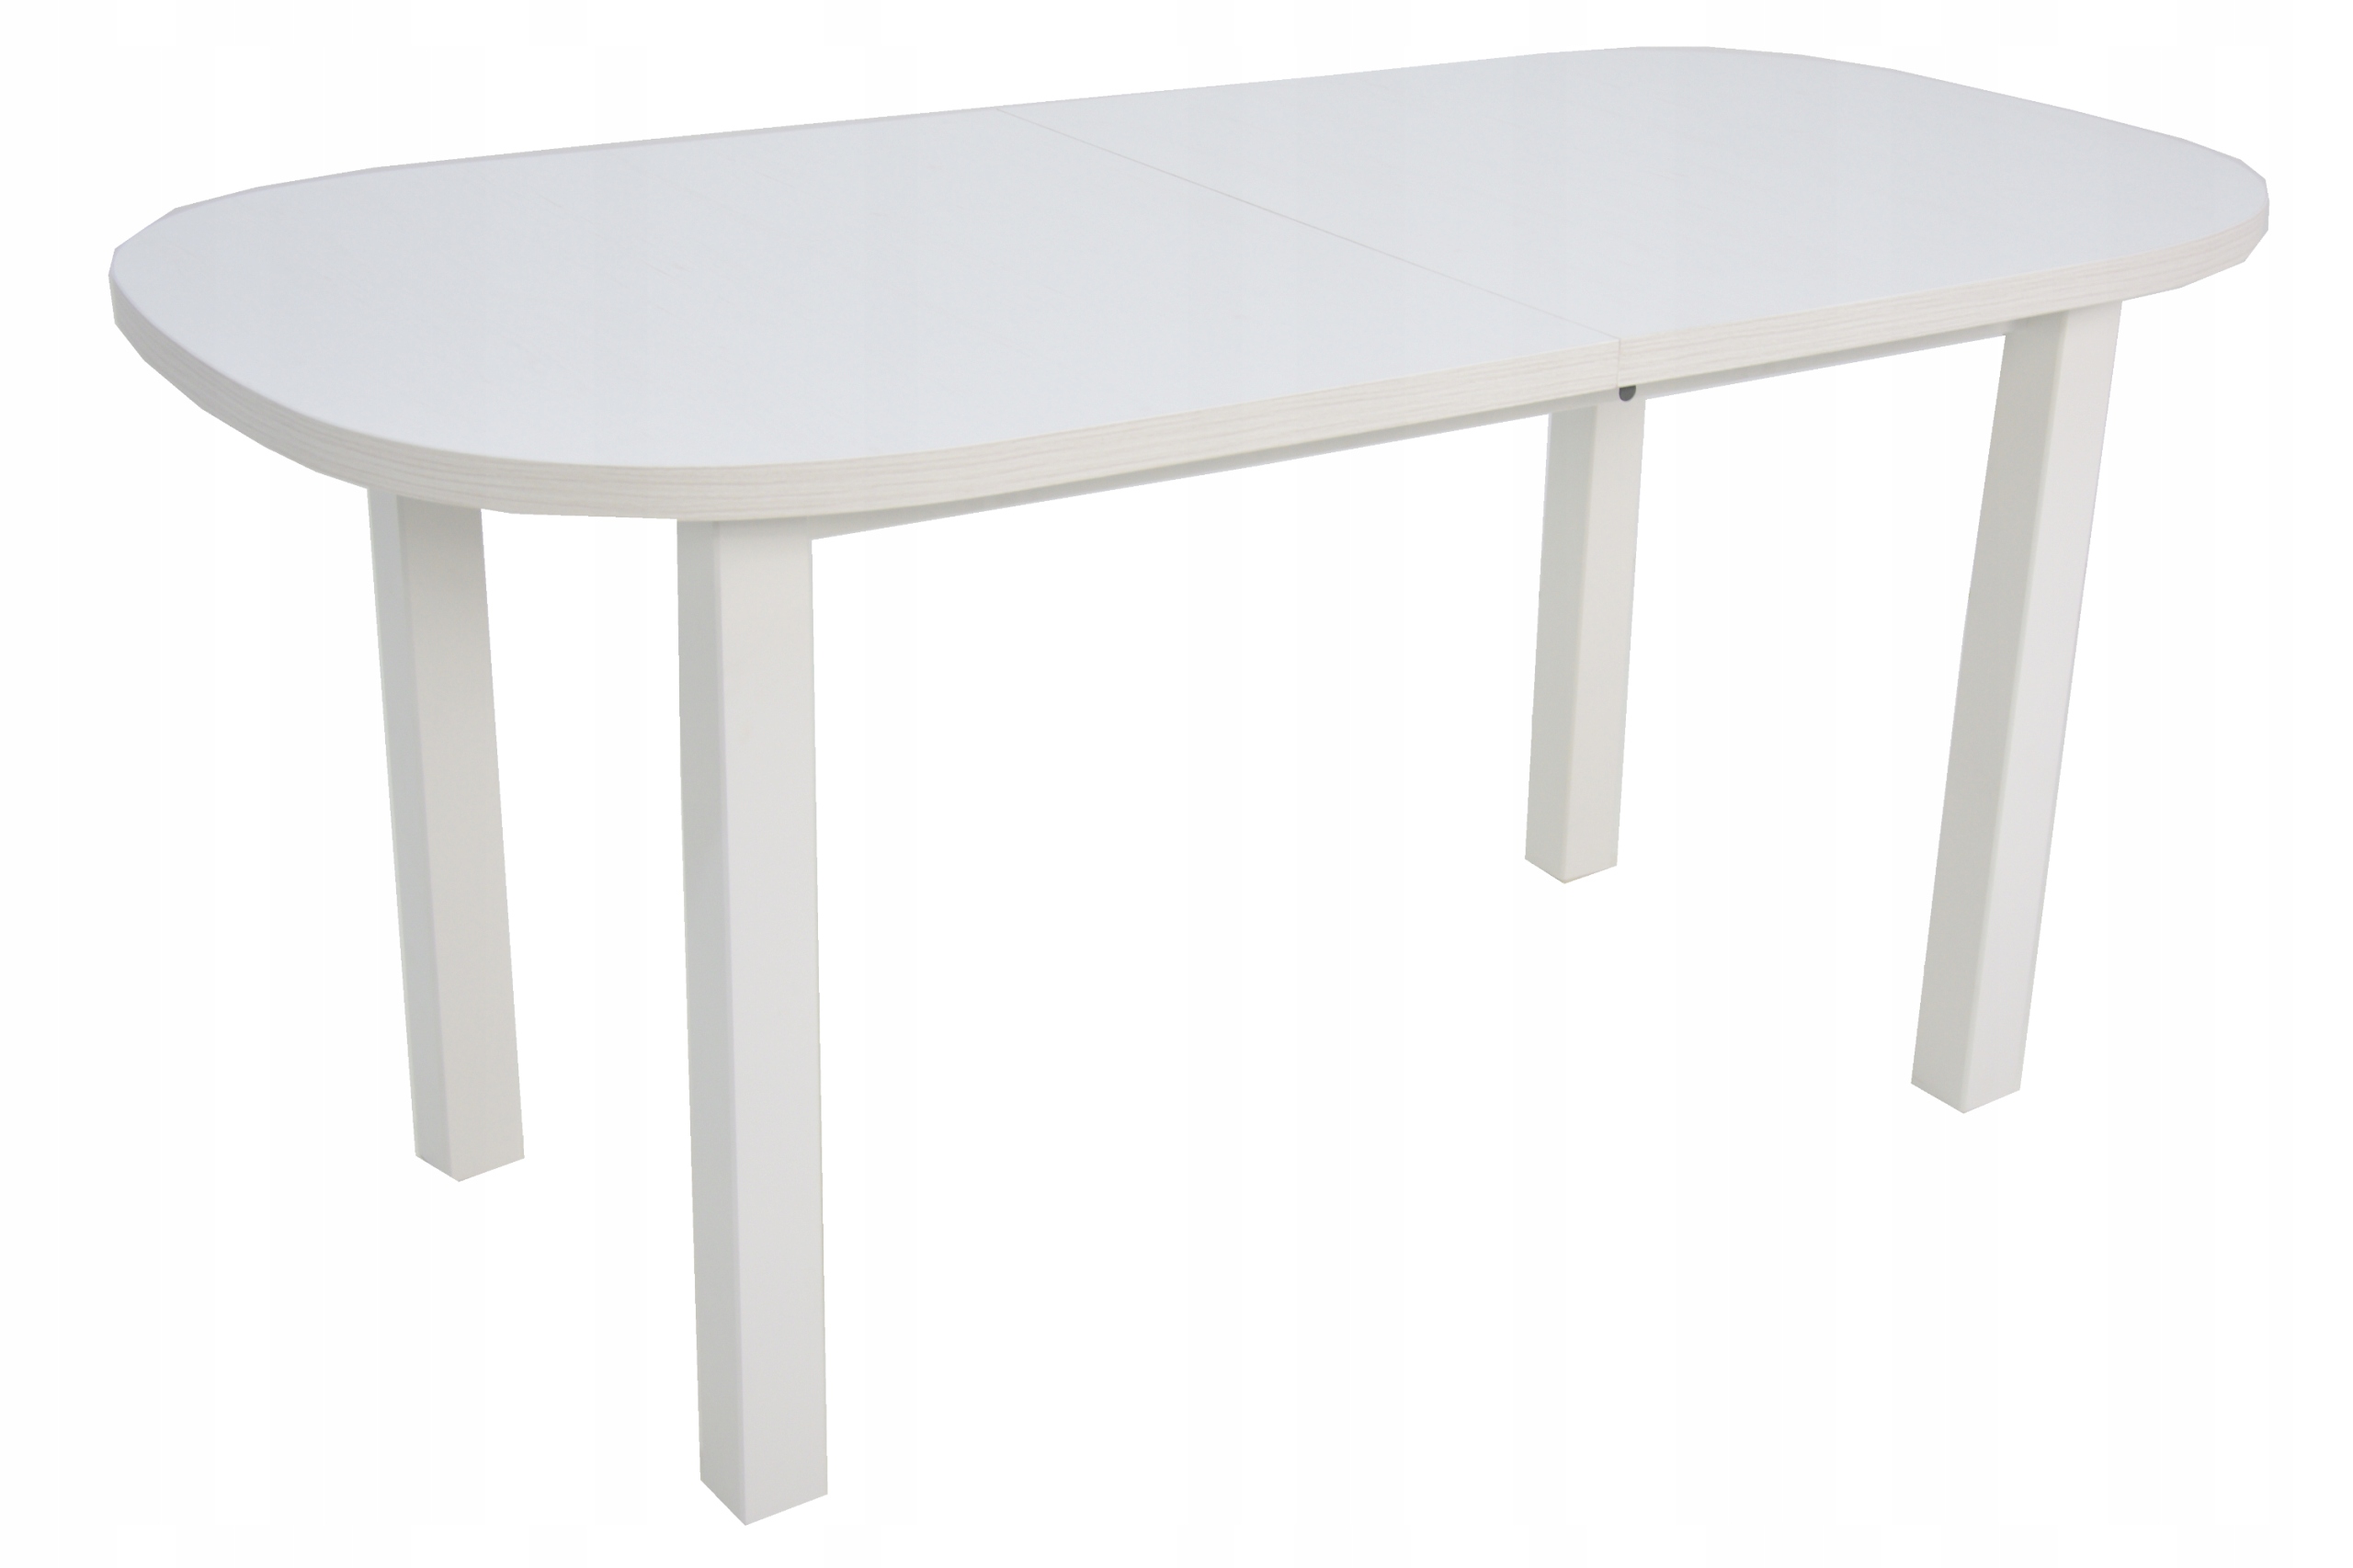 Кухонный стол 80 см. Кухонный стол 80х60 икеа. Стол Troy 160 +40 x90 матовый белый лак. Белый овальный стол икеа. Грация 110 стол раскладной.